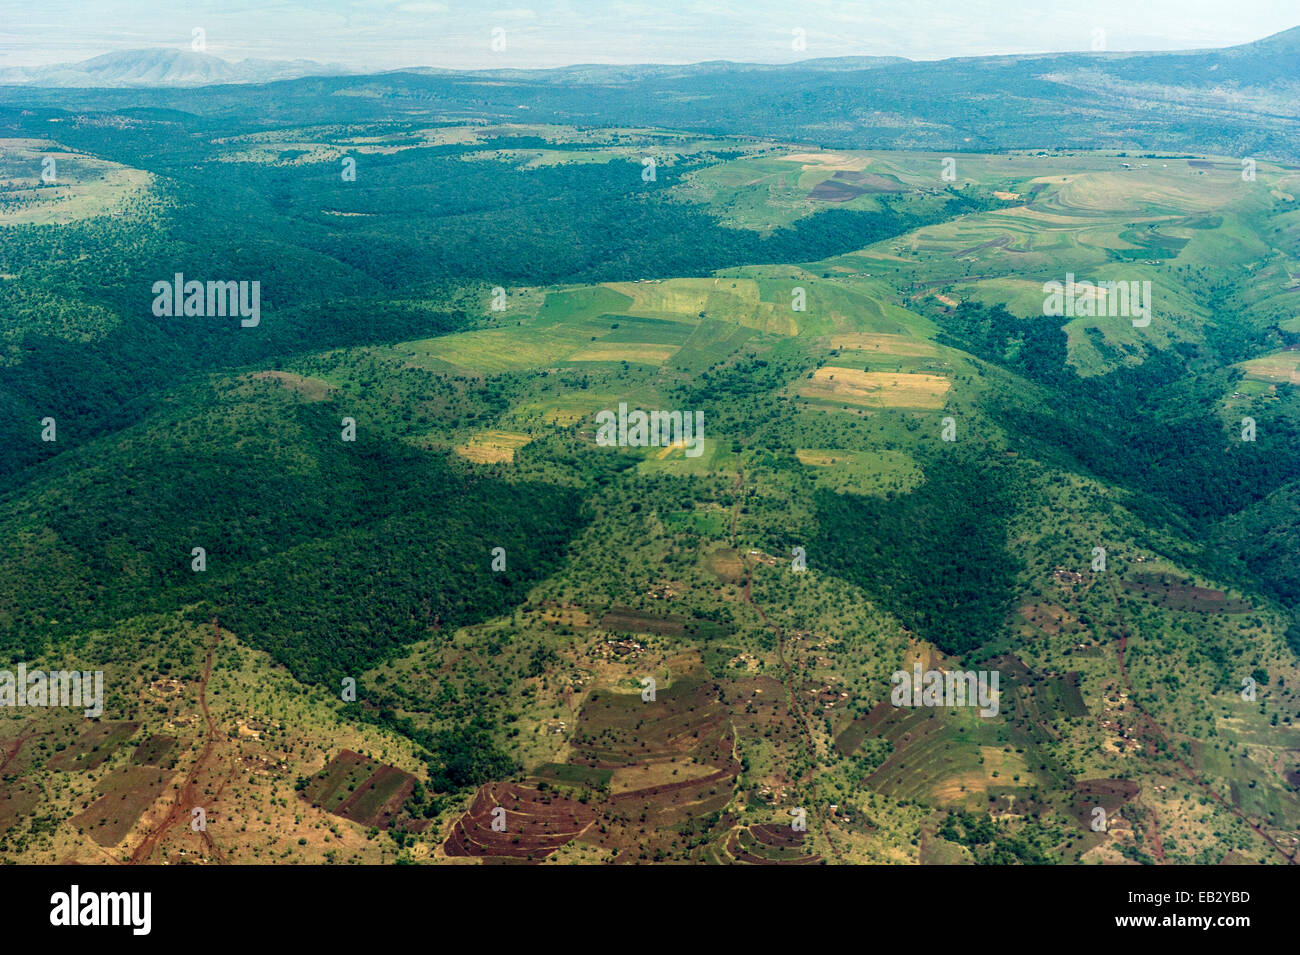 Les champs agricoles en terrasses sur les pentes de la montagne effacée de forêt tropicale. Banque D'Images